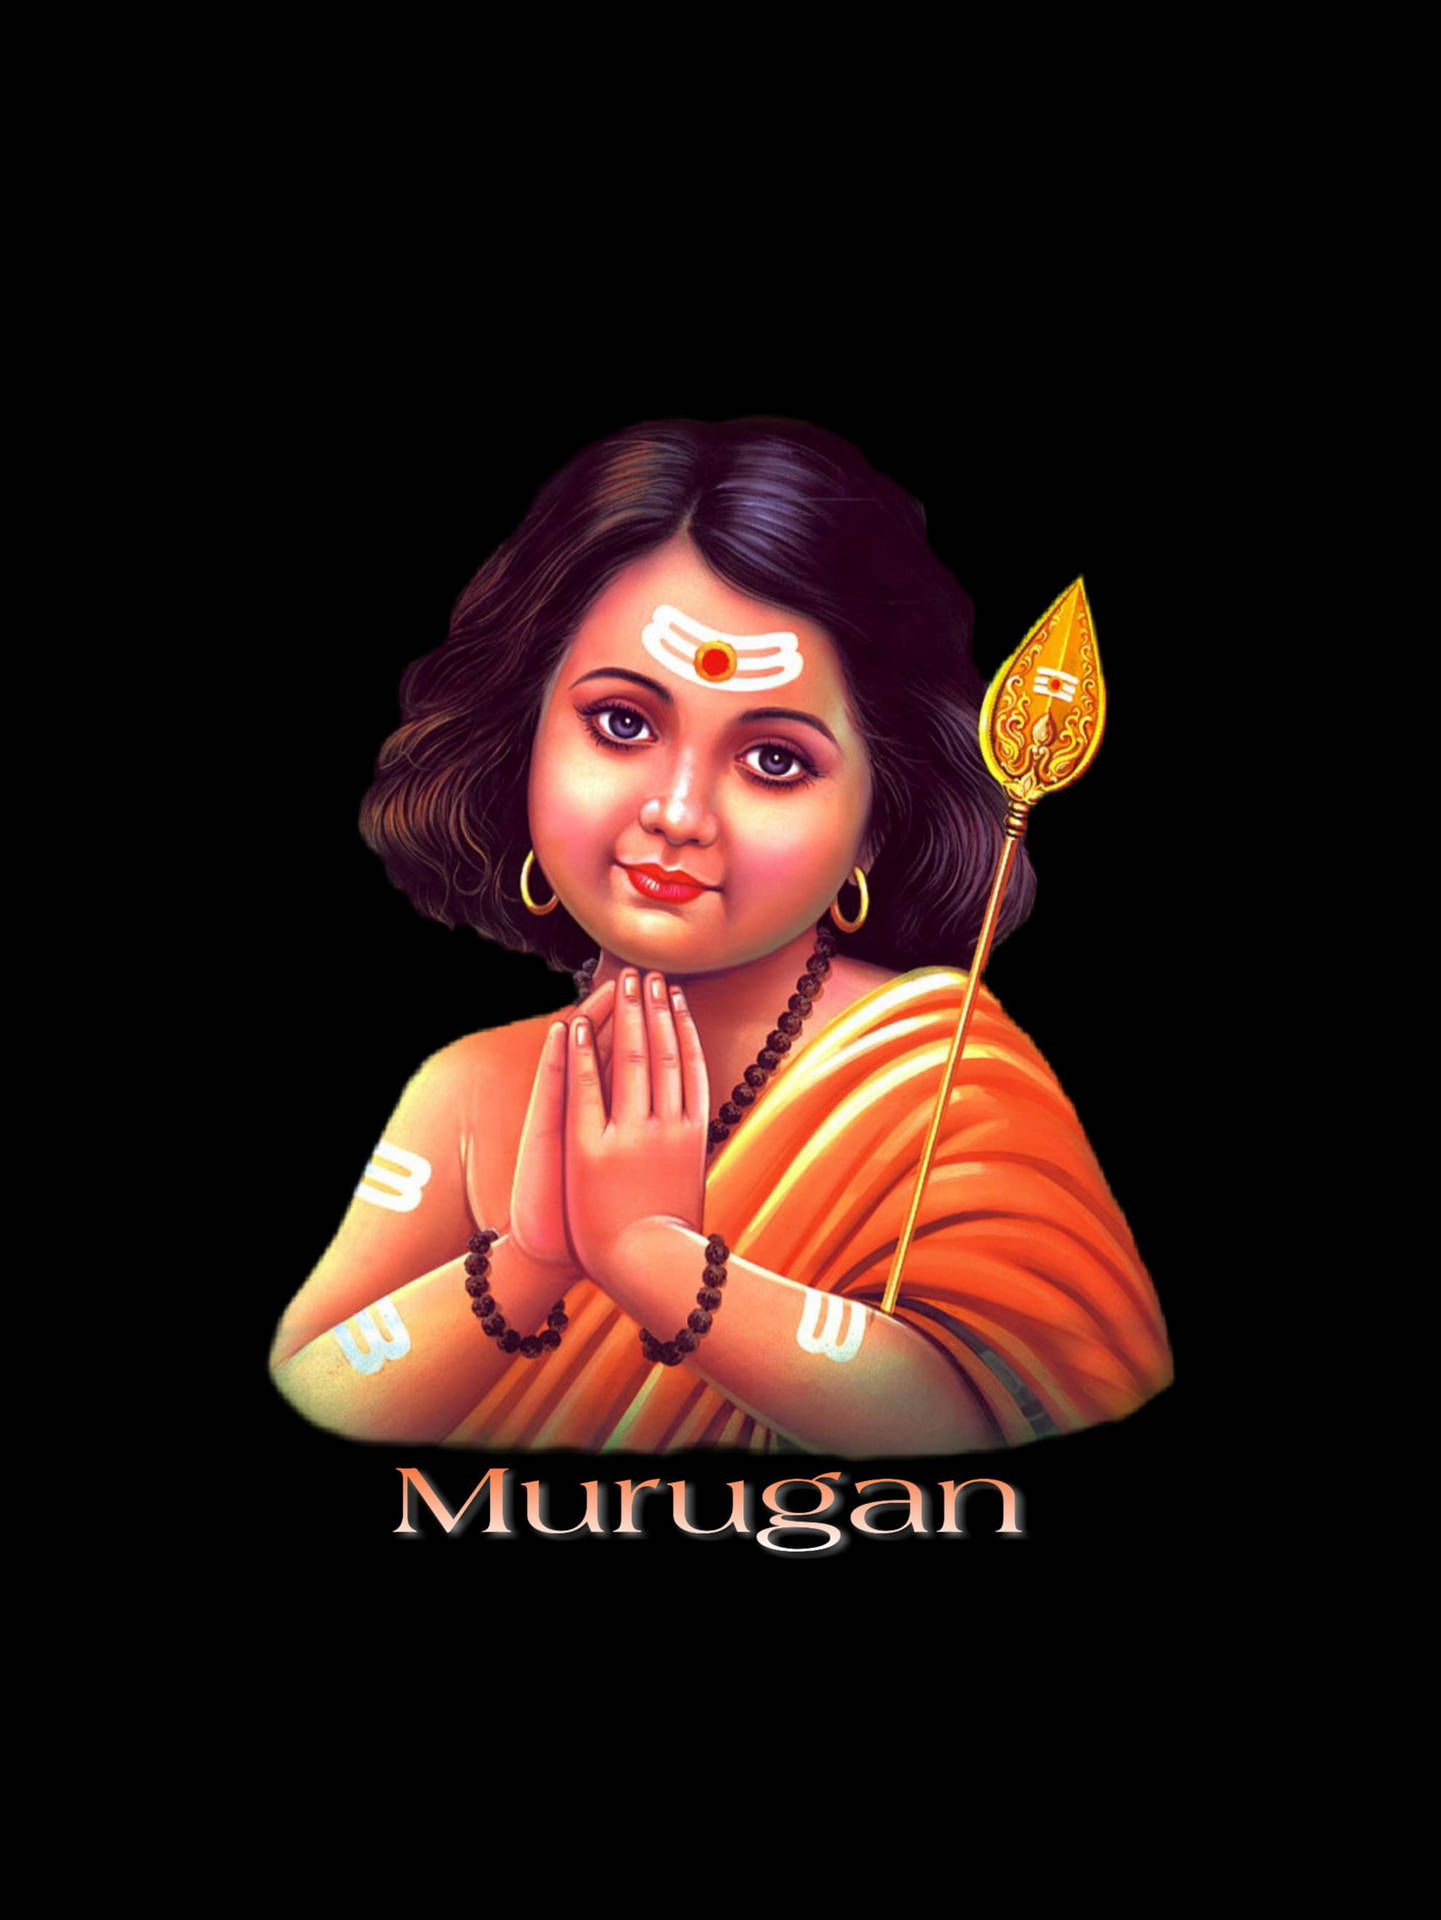 Free Murugan Wallpaper Downloads 200 Murugan Wallpapers for FREE   Wallpaperscom